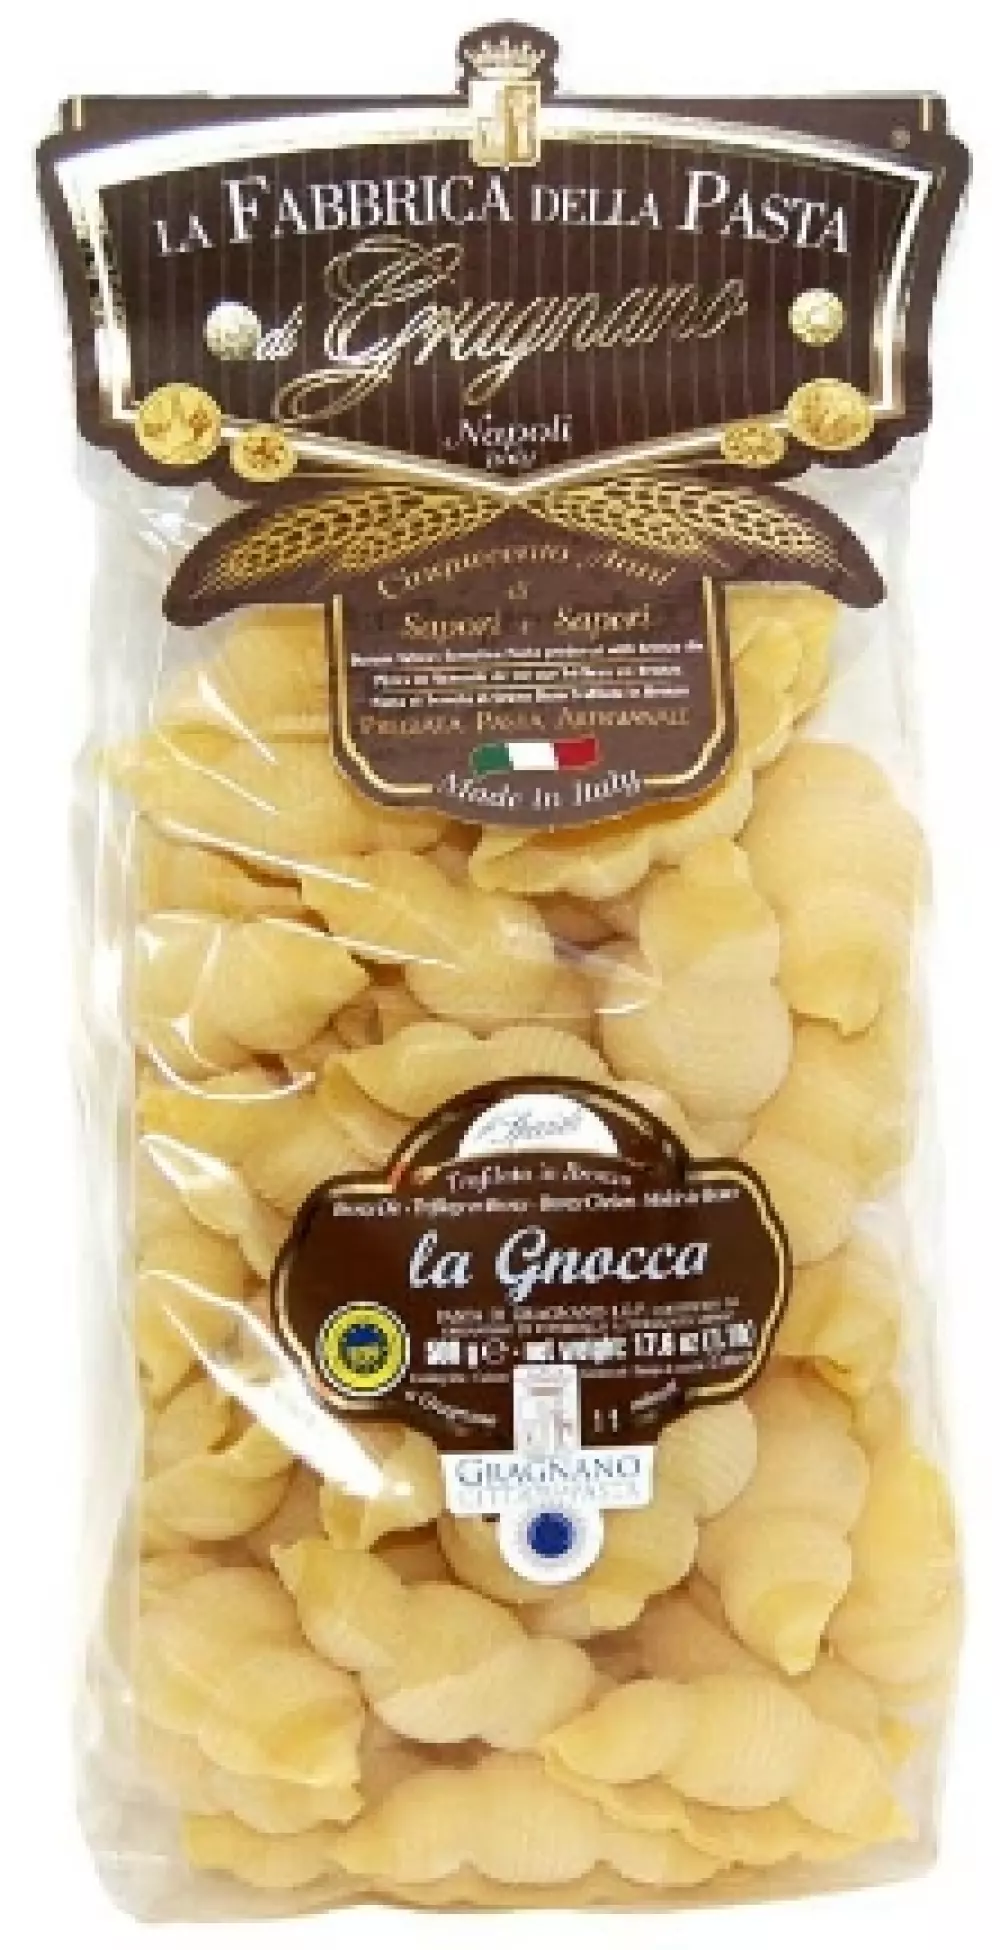 La Gnocca 500g - Fabbrica, 8033406264716, 80748599, Pasta, Andre, La Fabbrica della Pasta, 26470, Bronsetrukket pasta